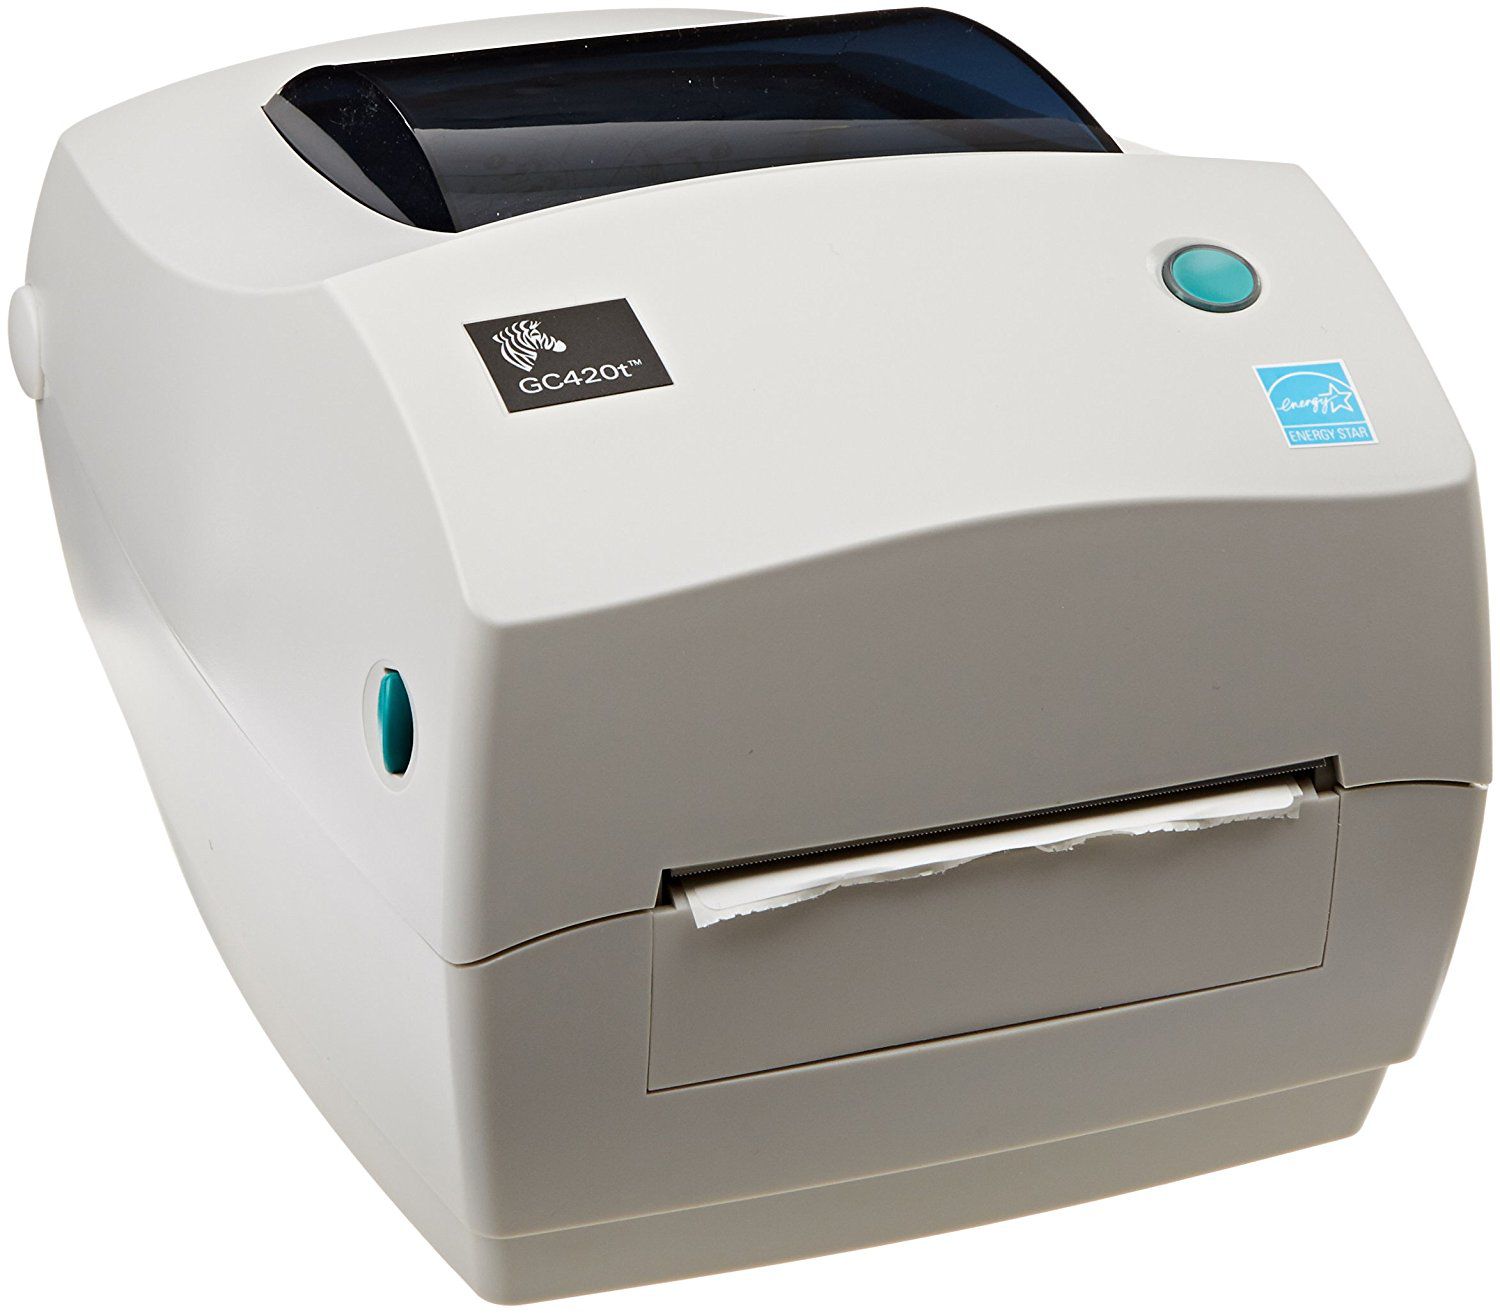 Impressora Térmica De Etiquetas Zebra Gc420t Últimas Unidades Loja Do Coletor Abc Solutions 0578